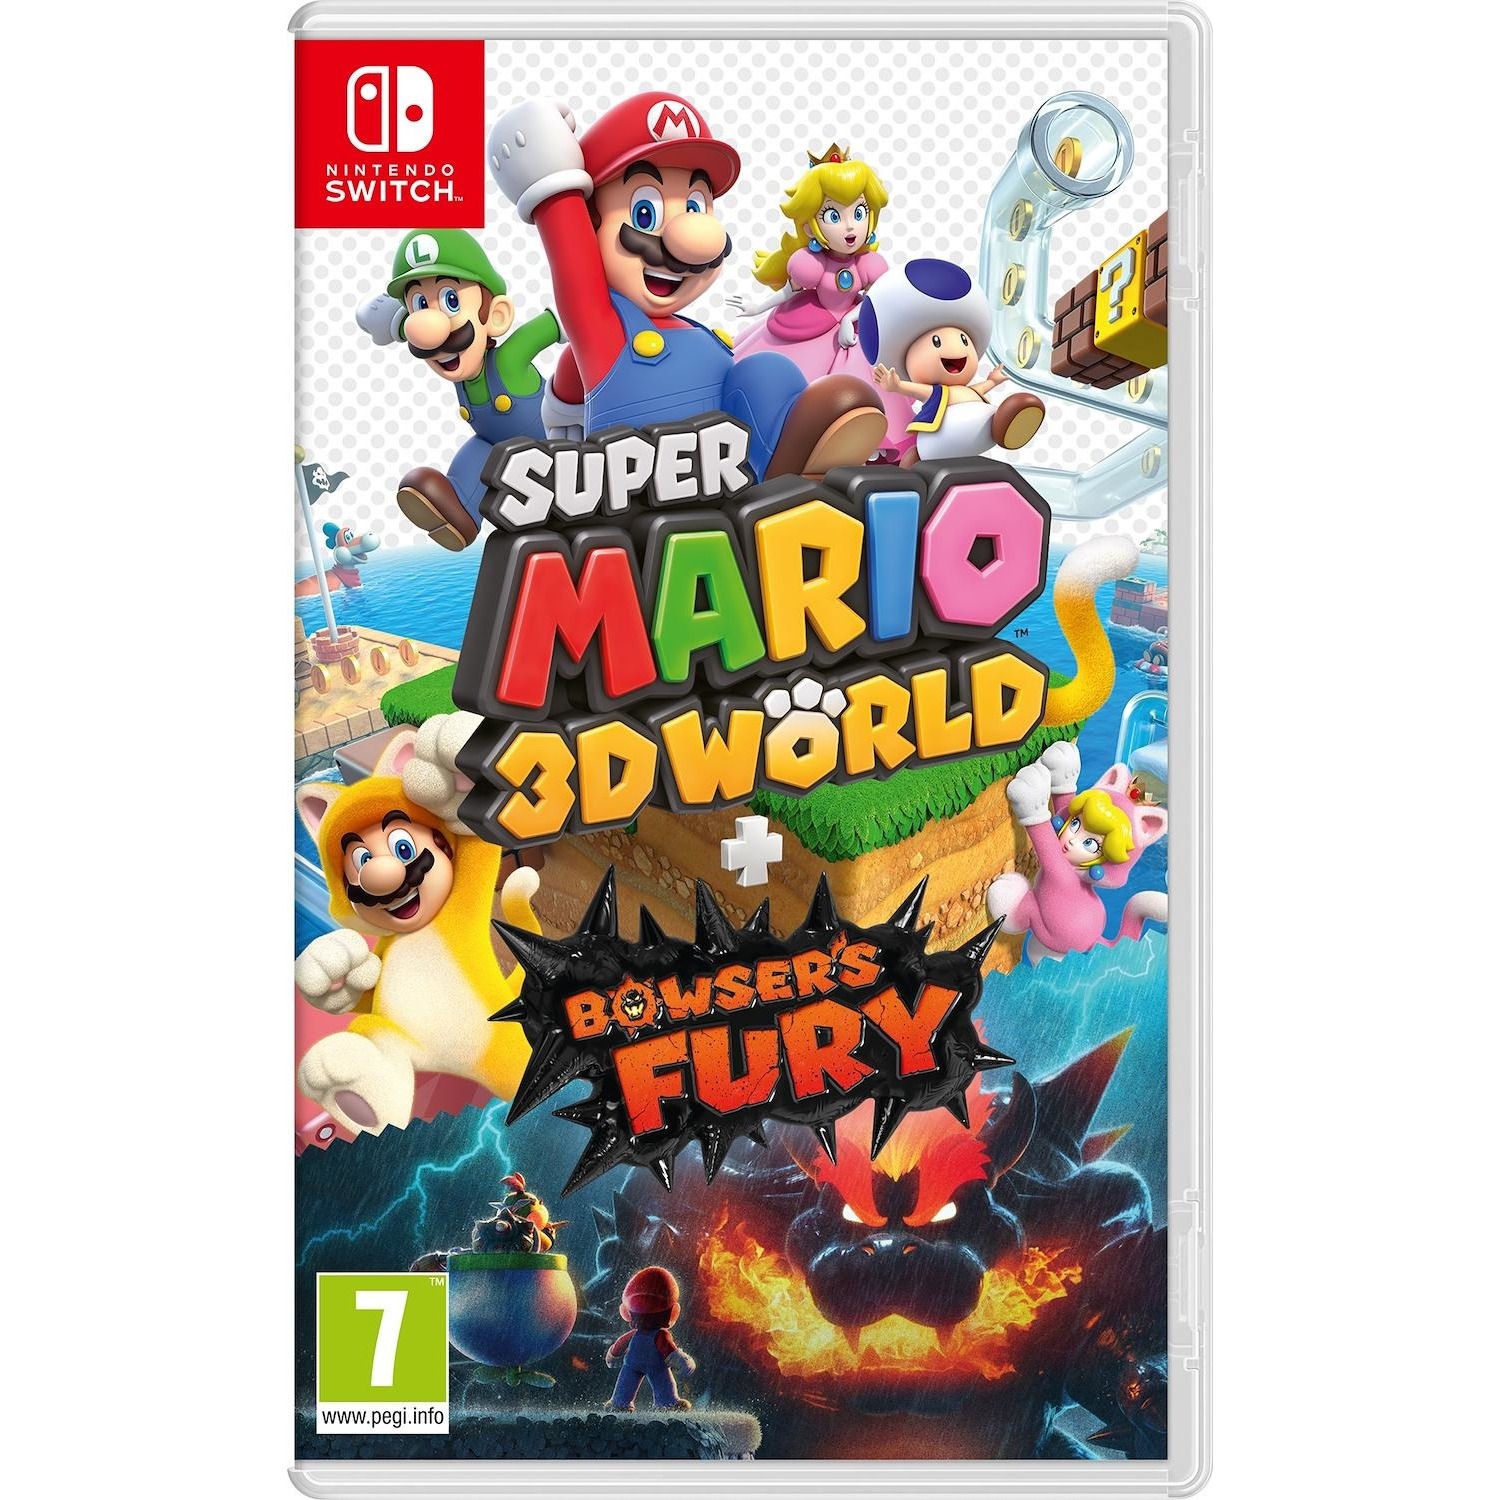 Immagine per Gioco Switch Super Mario 3D World + Bowser's Fury da DIMOStore